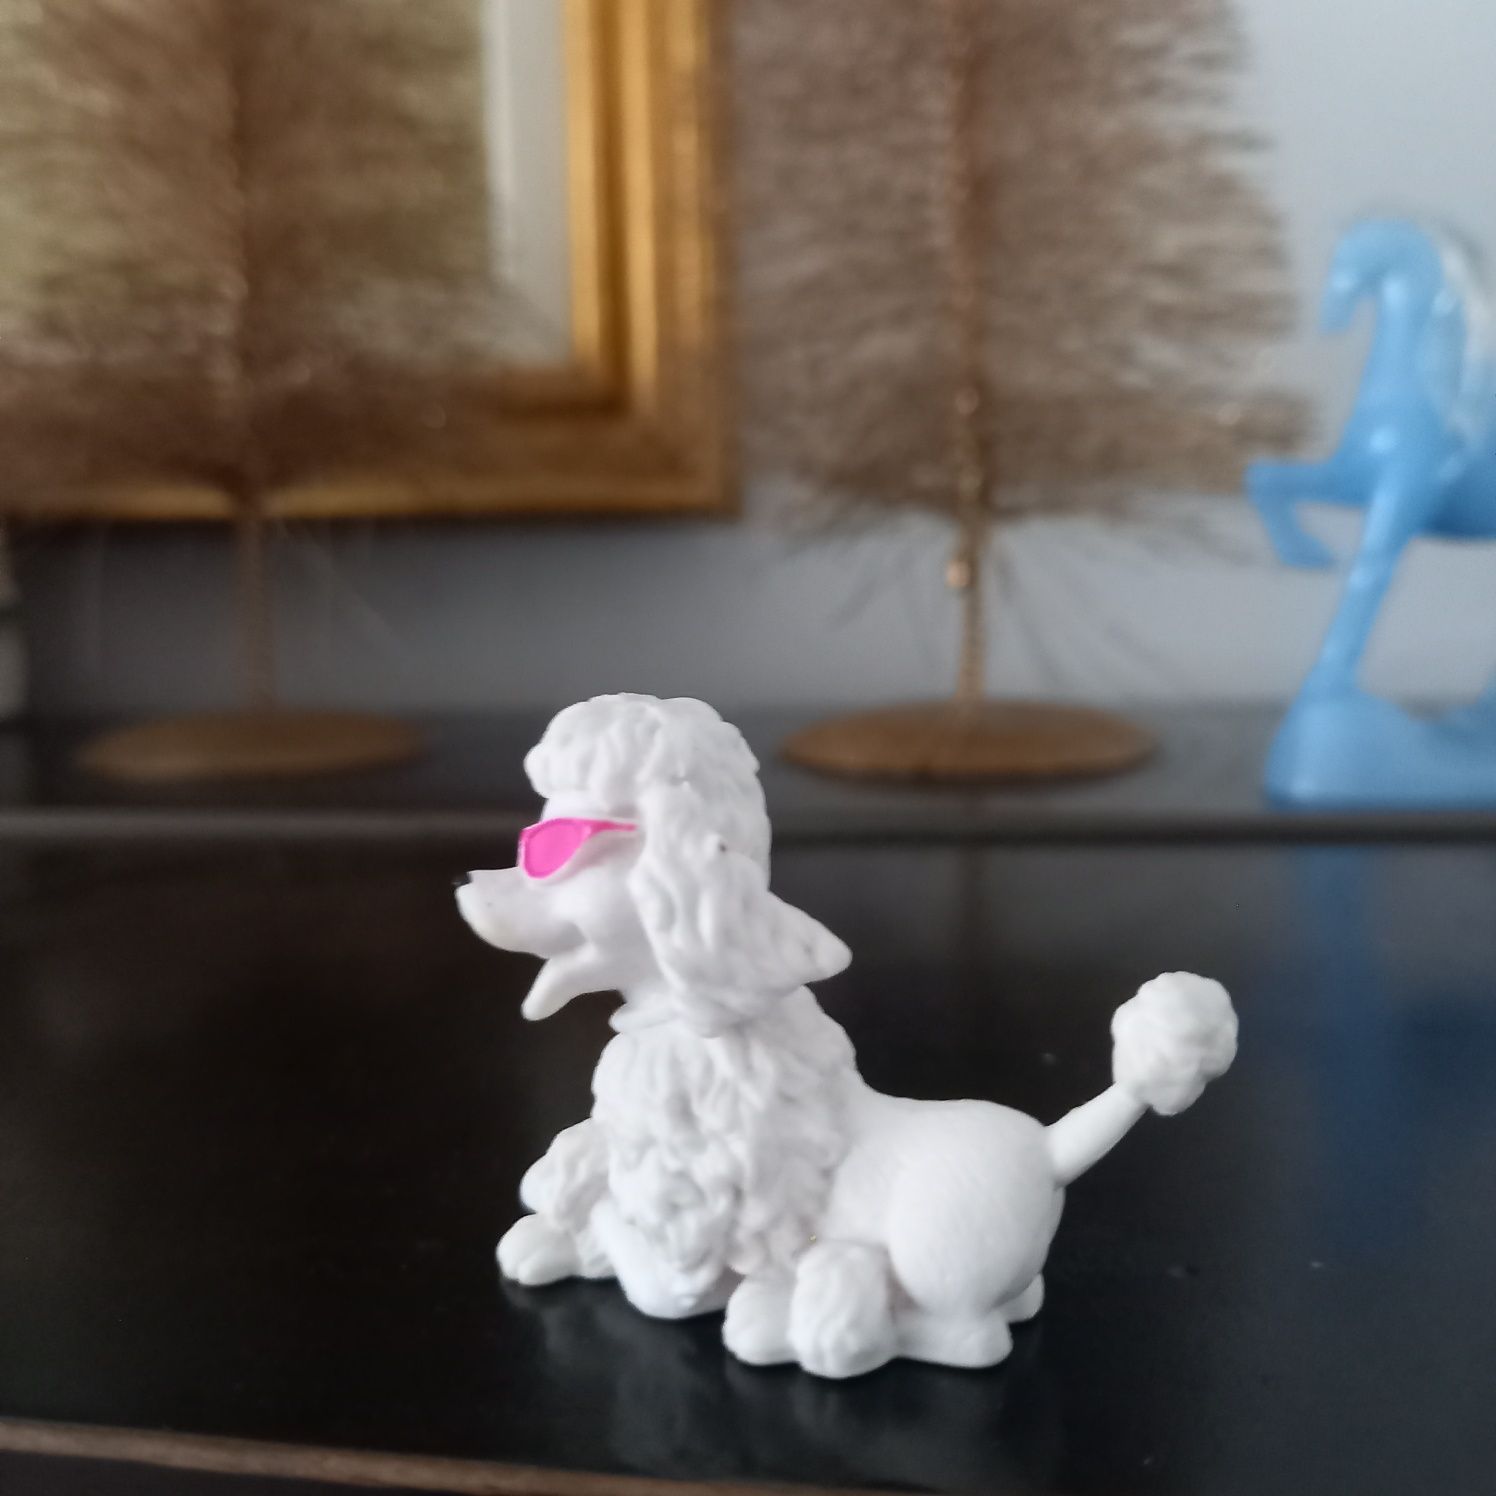 Urocza figurka Mattel piesek biały w okularach pies miniaturka 2009